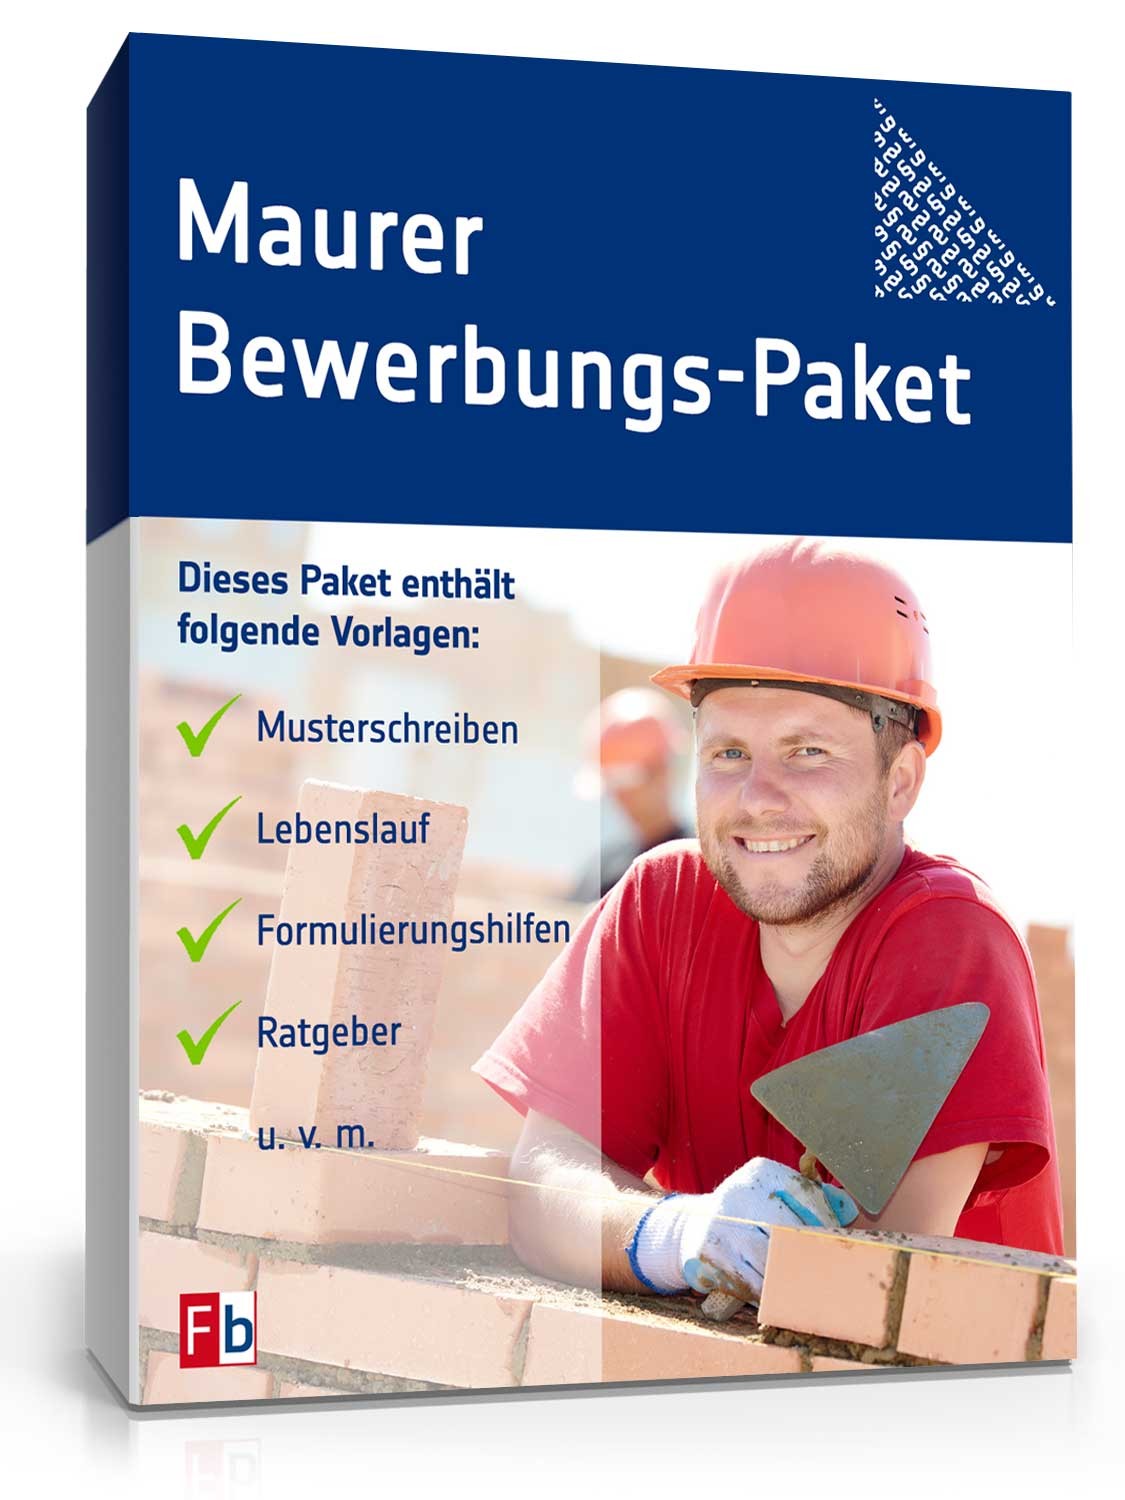 Hauptbild des Produkts: Bewerbungs-Paket Maurer 